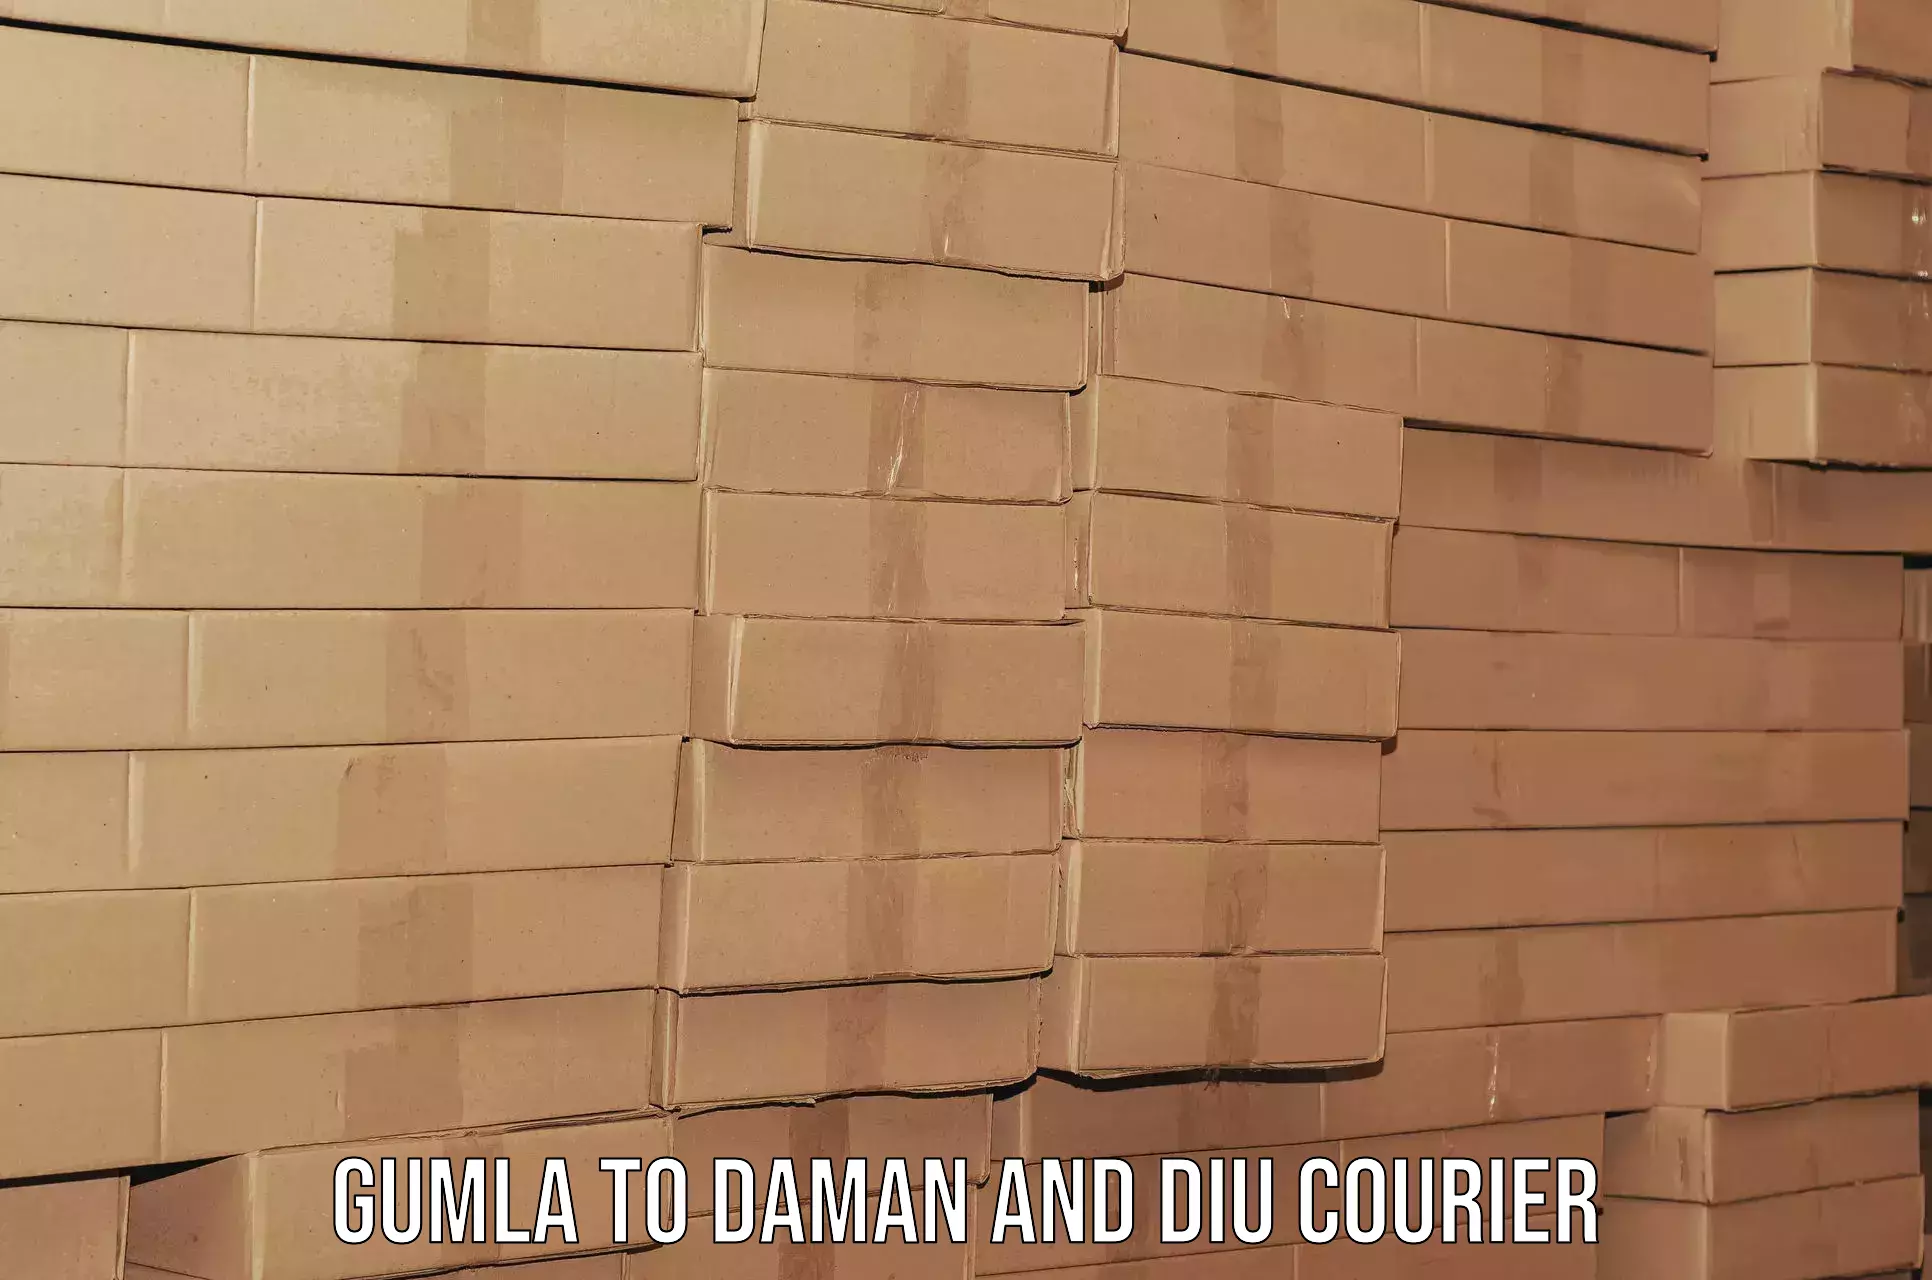 Furniture transport experts Gumla to Daman and Diu